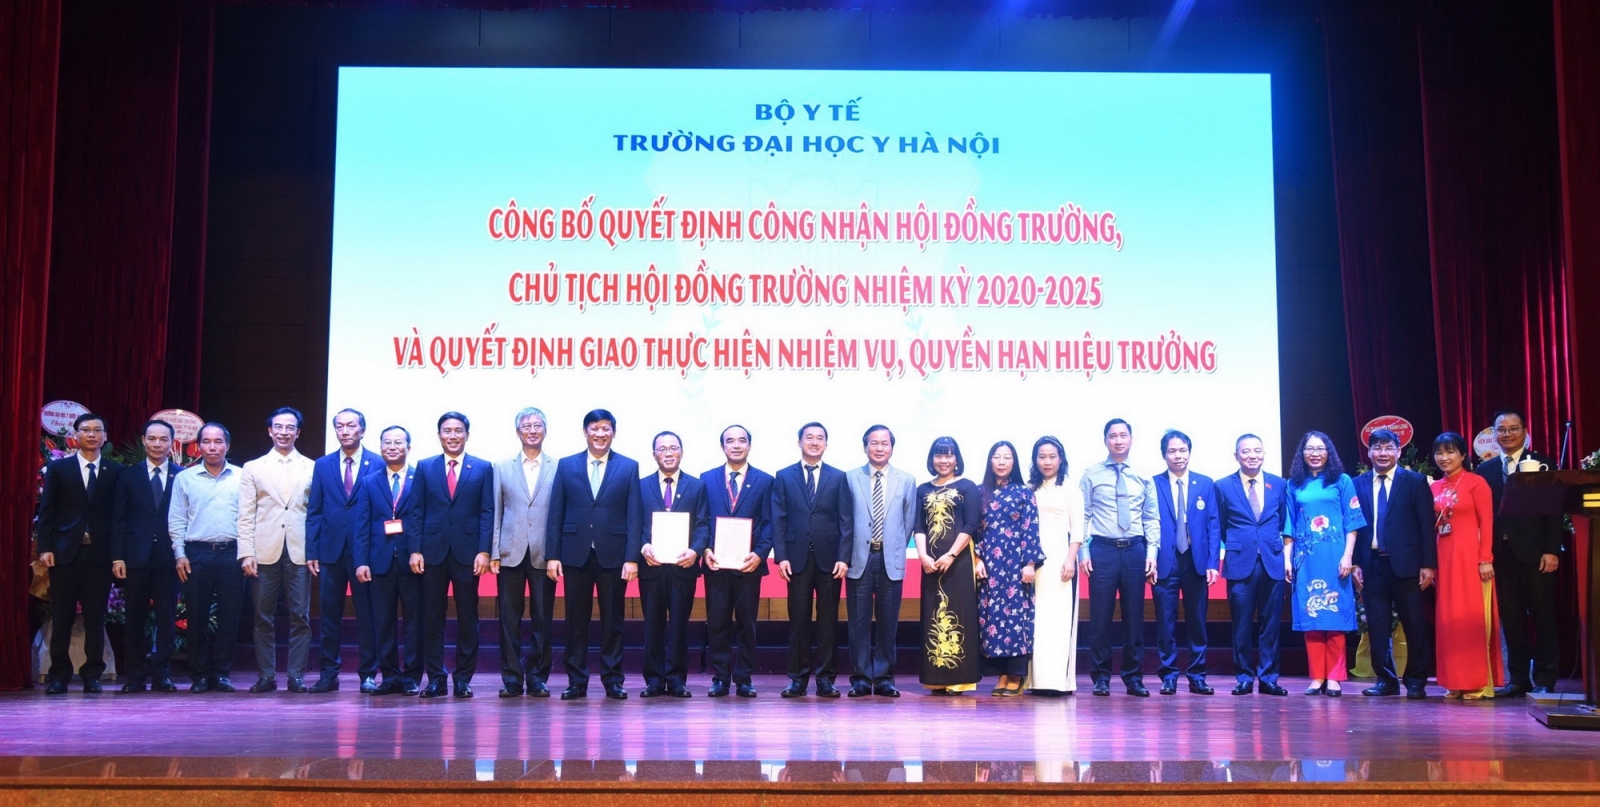 Đại học Y Hà Nội có Chủ tịch Hội đồng trường và hiệu trưởng mới - Ảnh minh hoạ 2